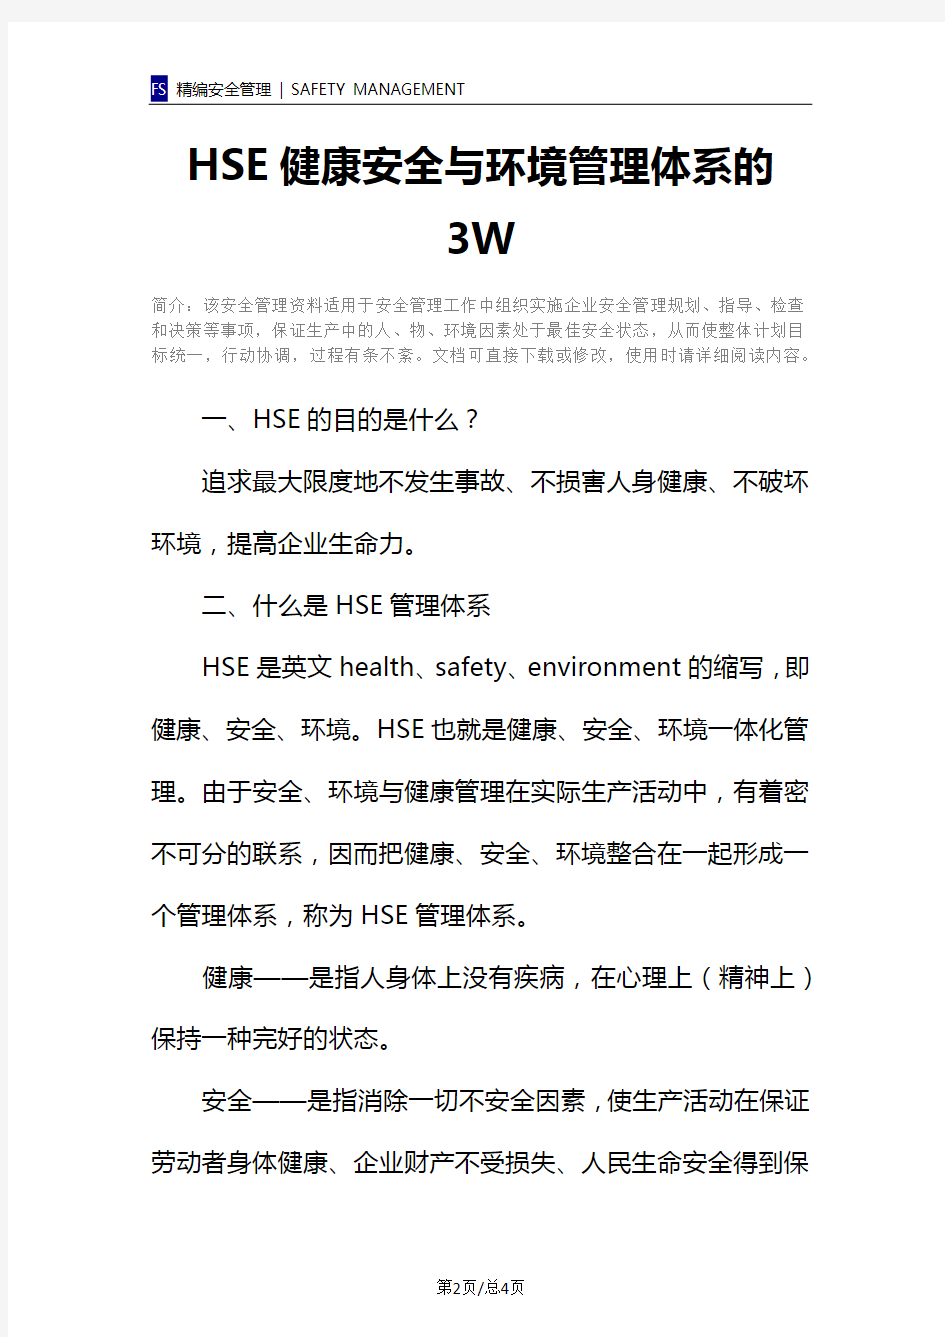 HSE健康安全与环境管理体系的3W